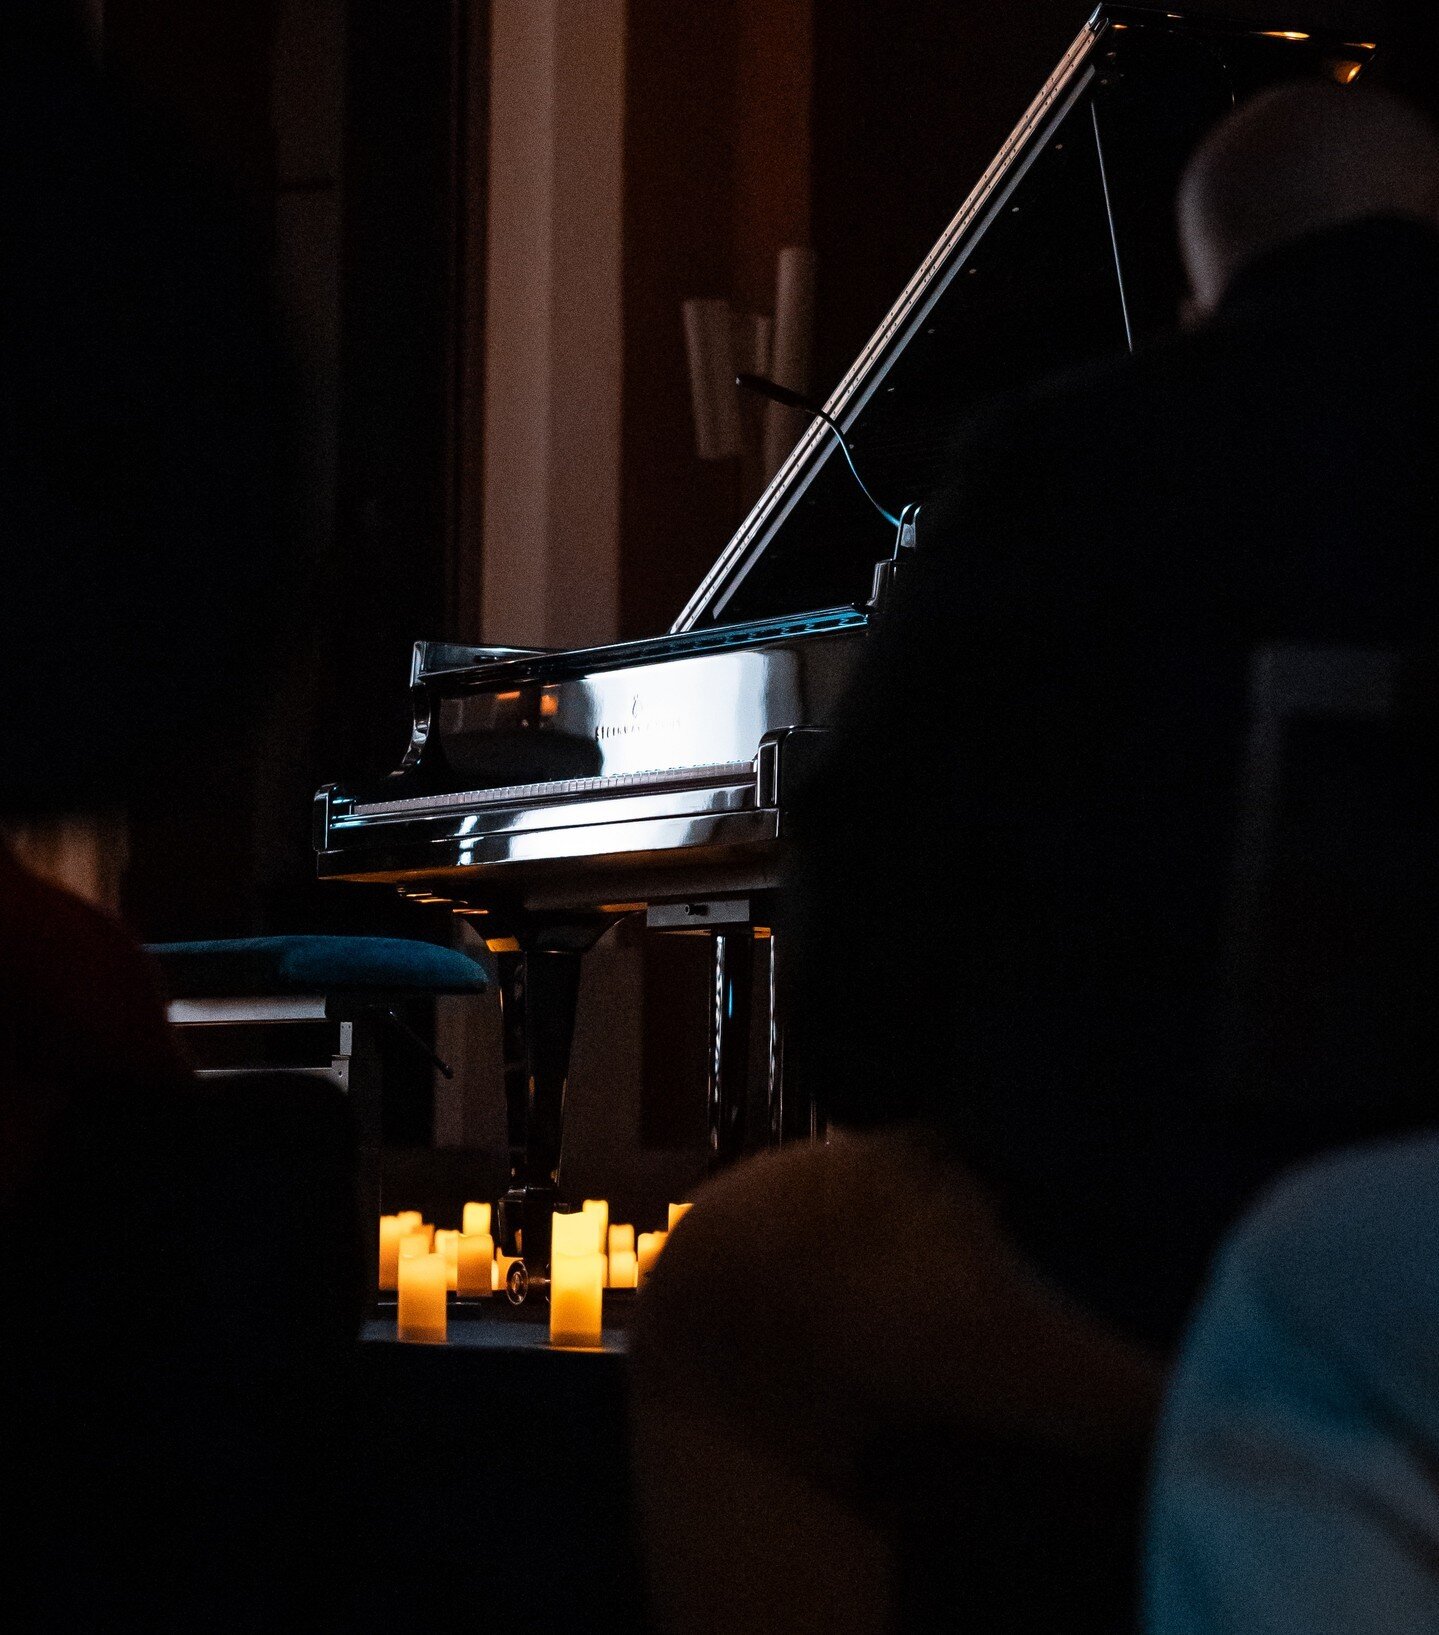 Martha Argerich, dit que le piano est un peu comme un amant d'un soir... c'est vrai qu'il faut toujours s'adapter &agrave; cette nouvelle rencontre, &ccedil;a fait partie du jeu...
#piano #concert #musique #adaptation #mouvement #surprises